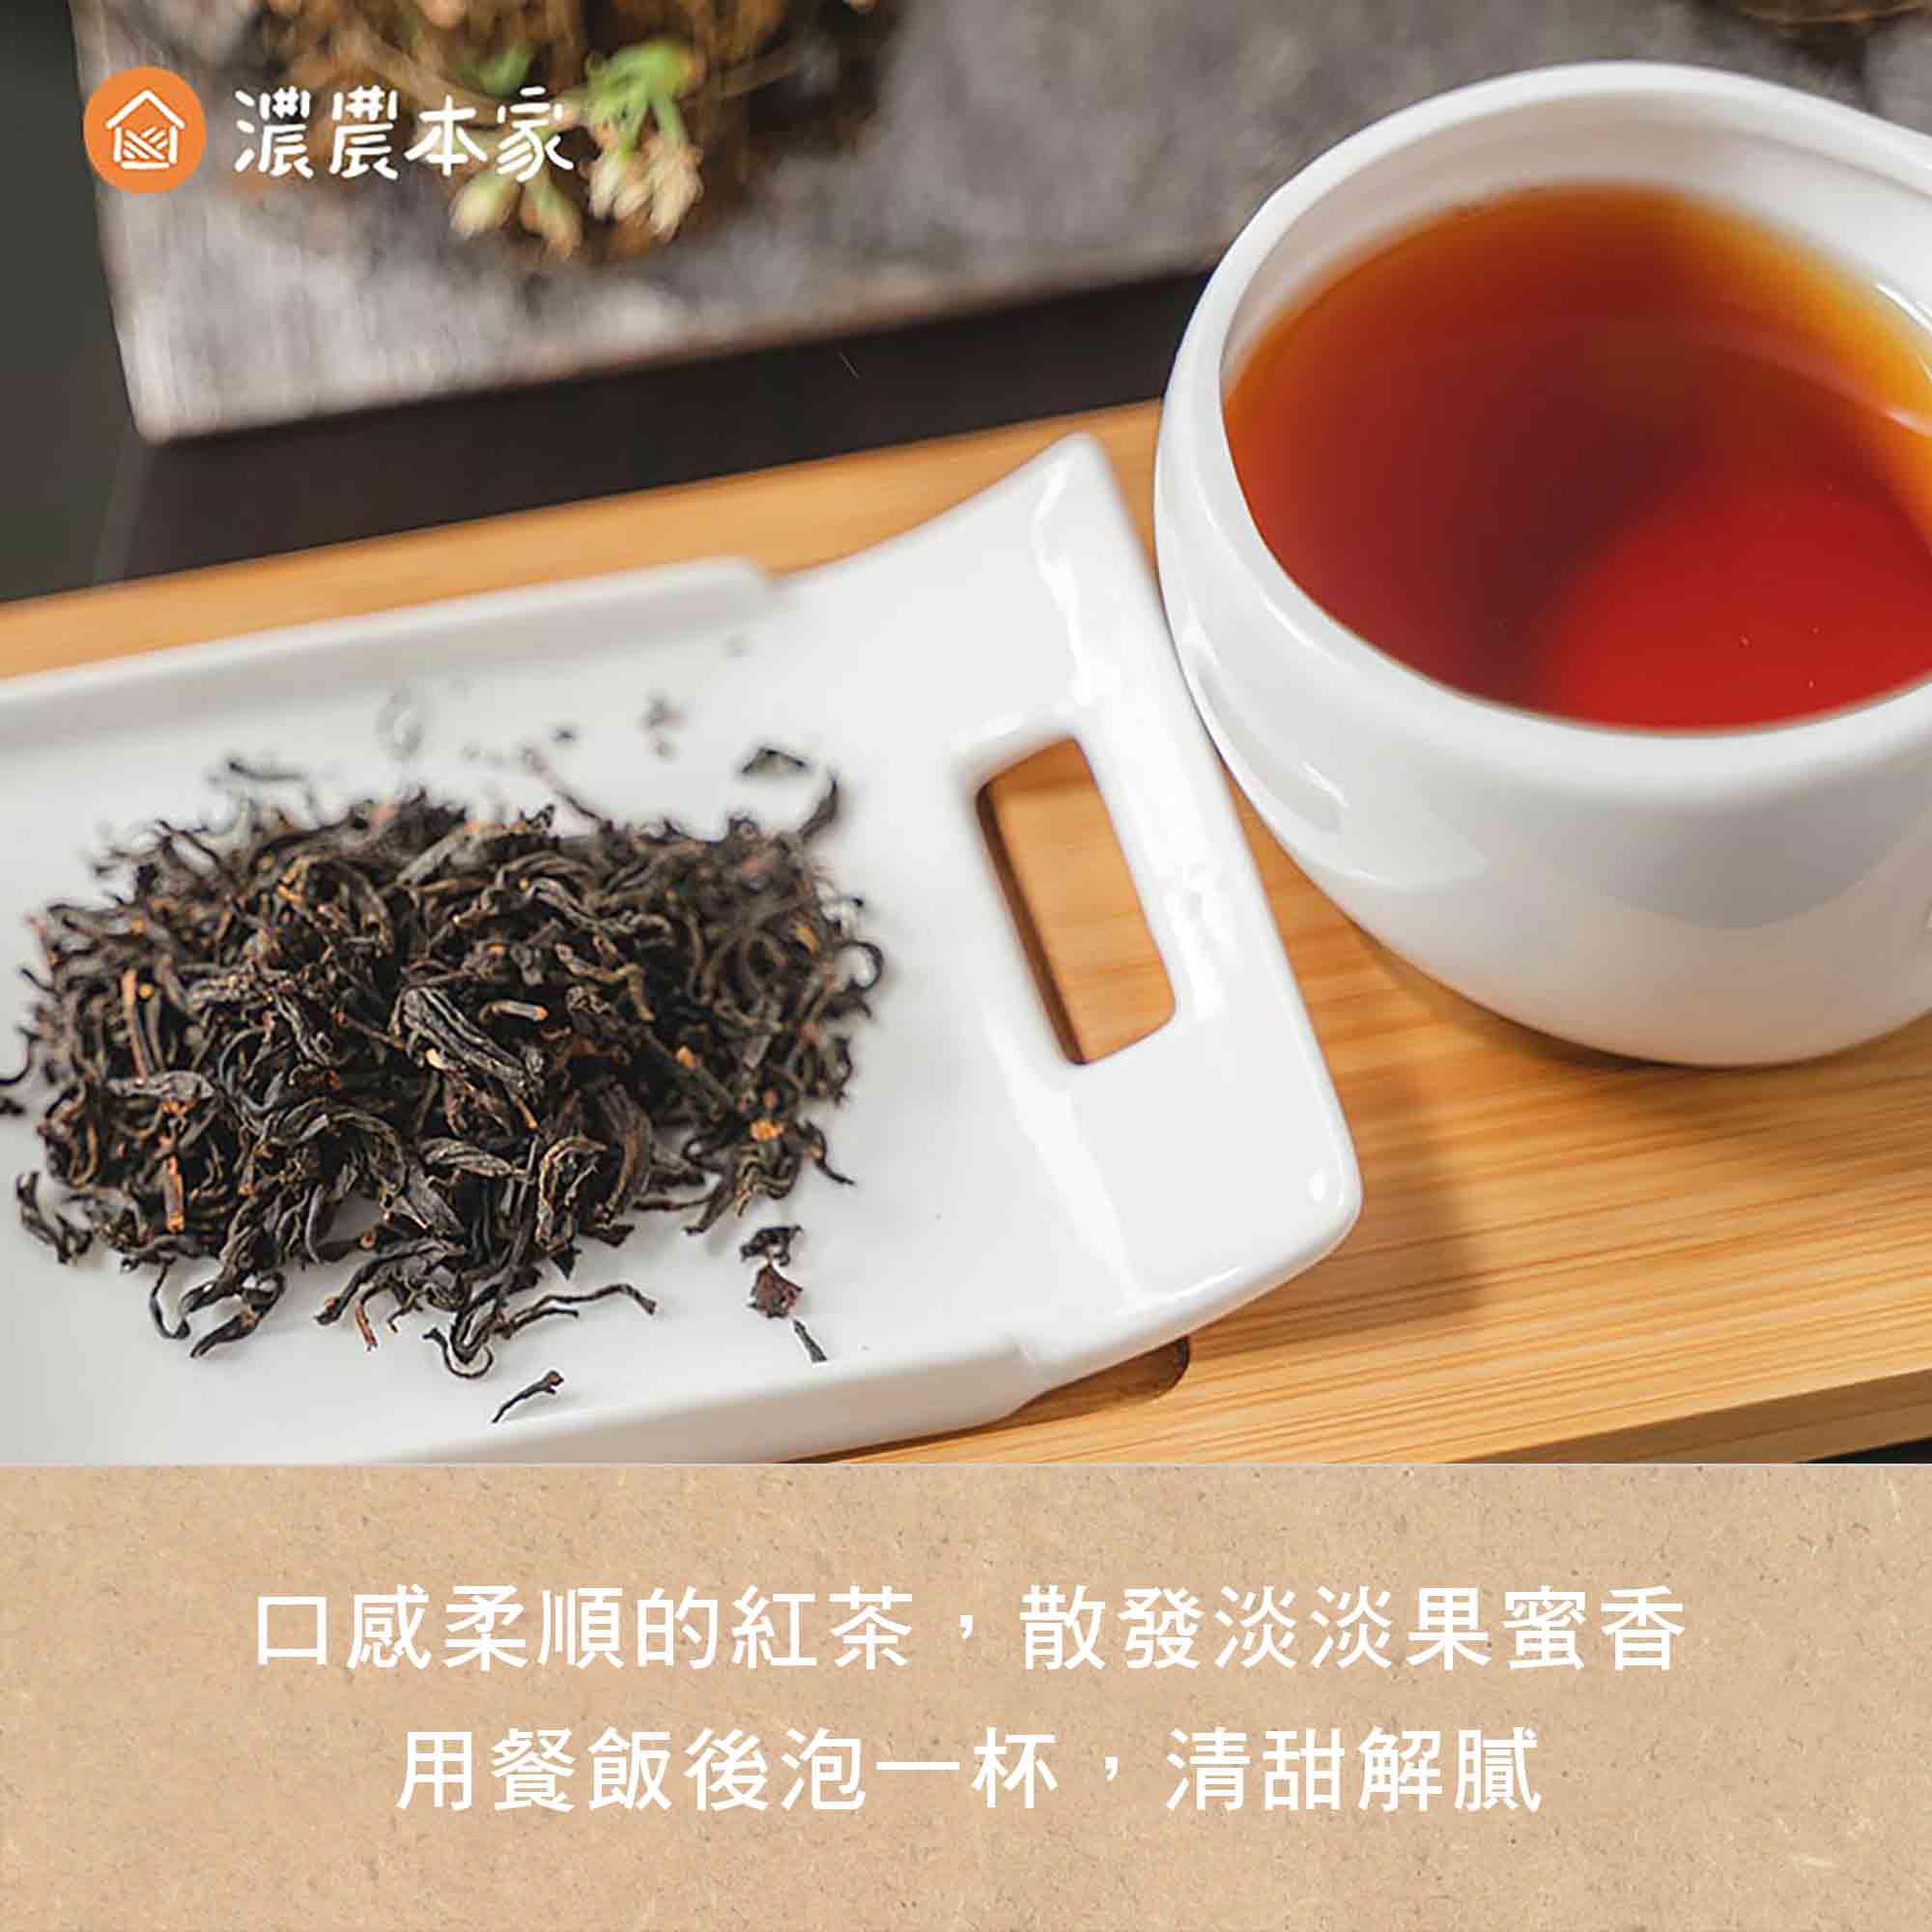 【台灣特色美食】外國人喜歡的經典台灣特有零食推薦蜜香紅茶